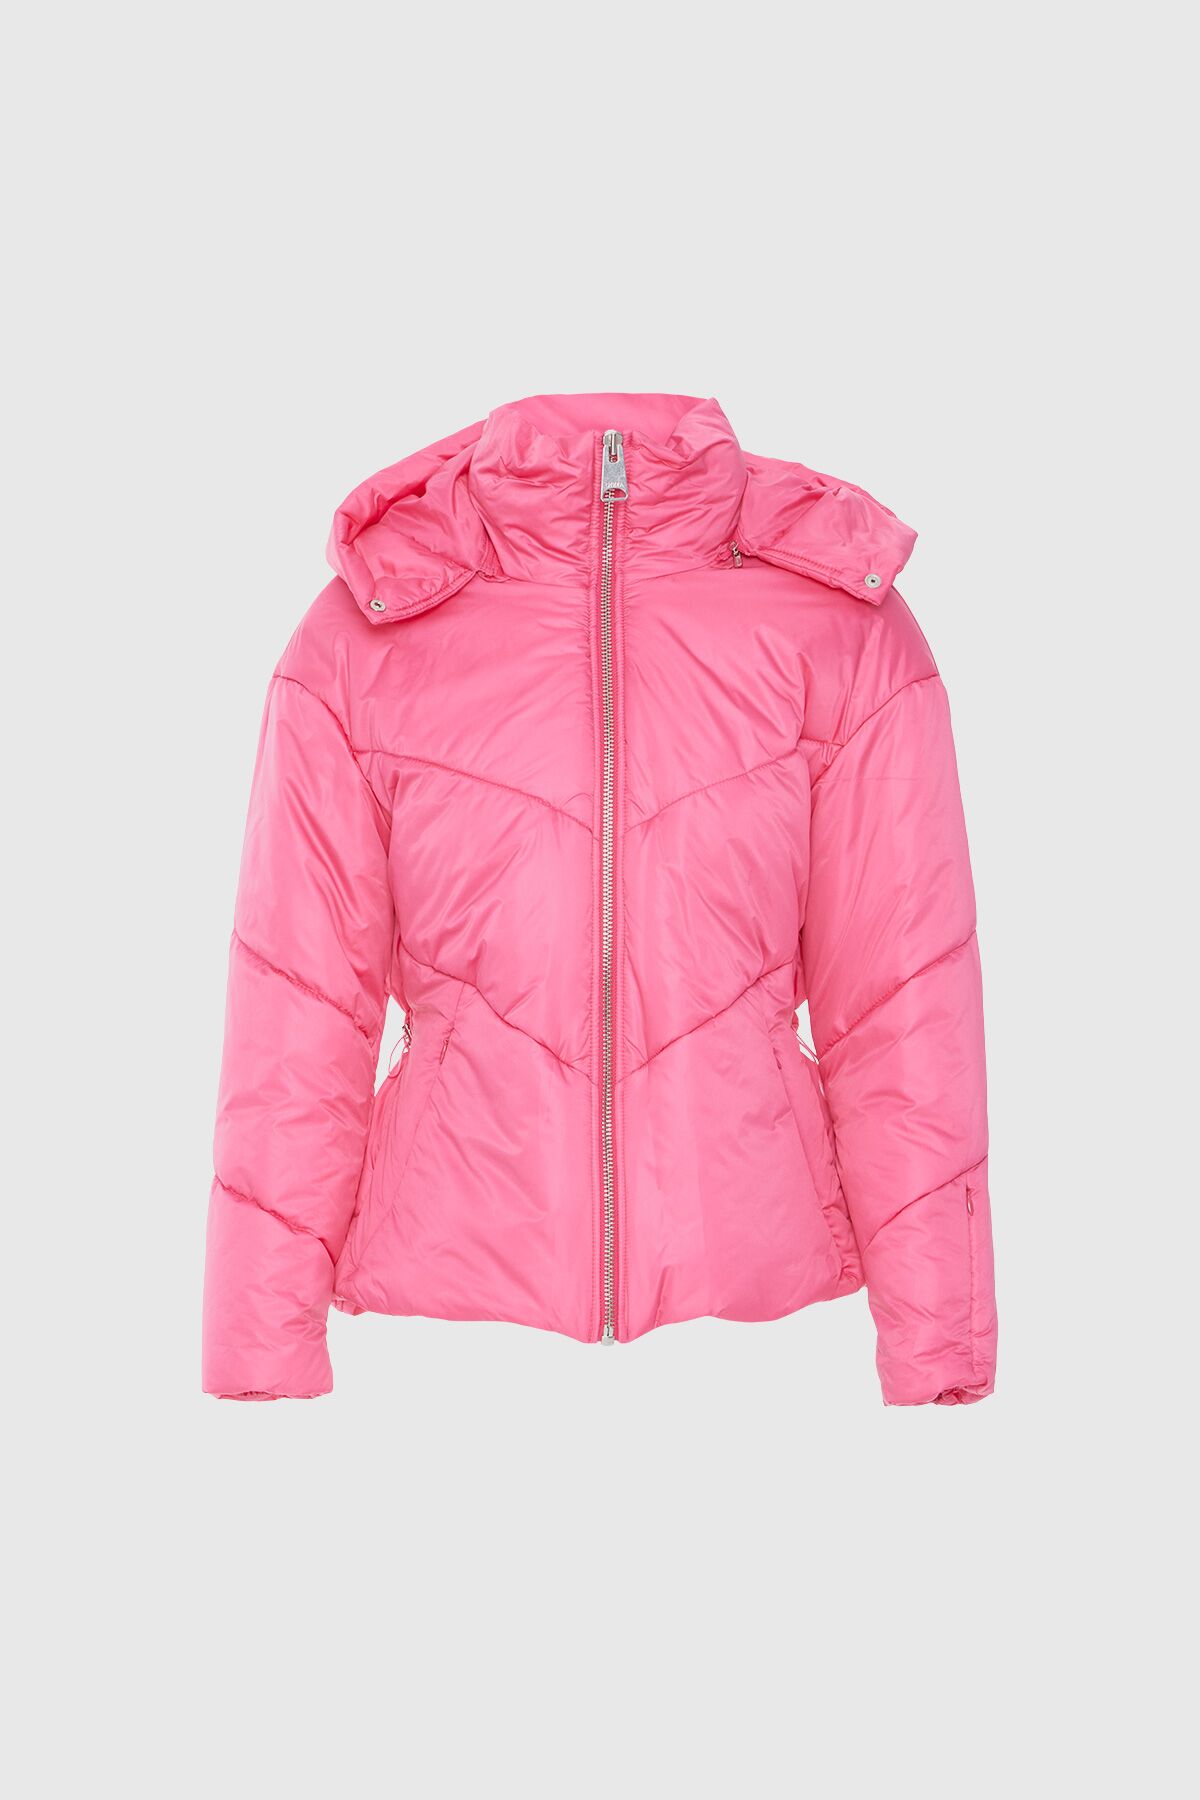  GIZIA - Pink Puffer Jacket